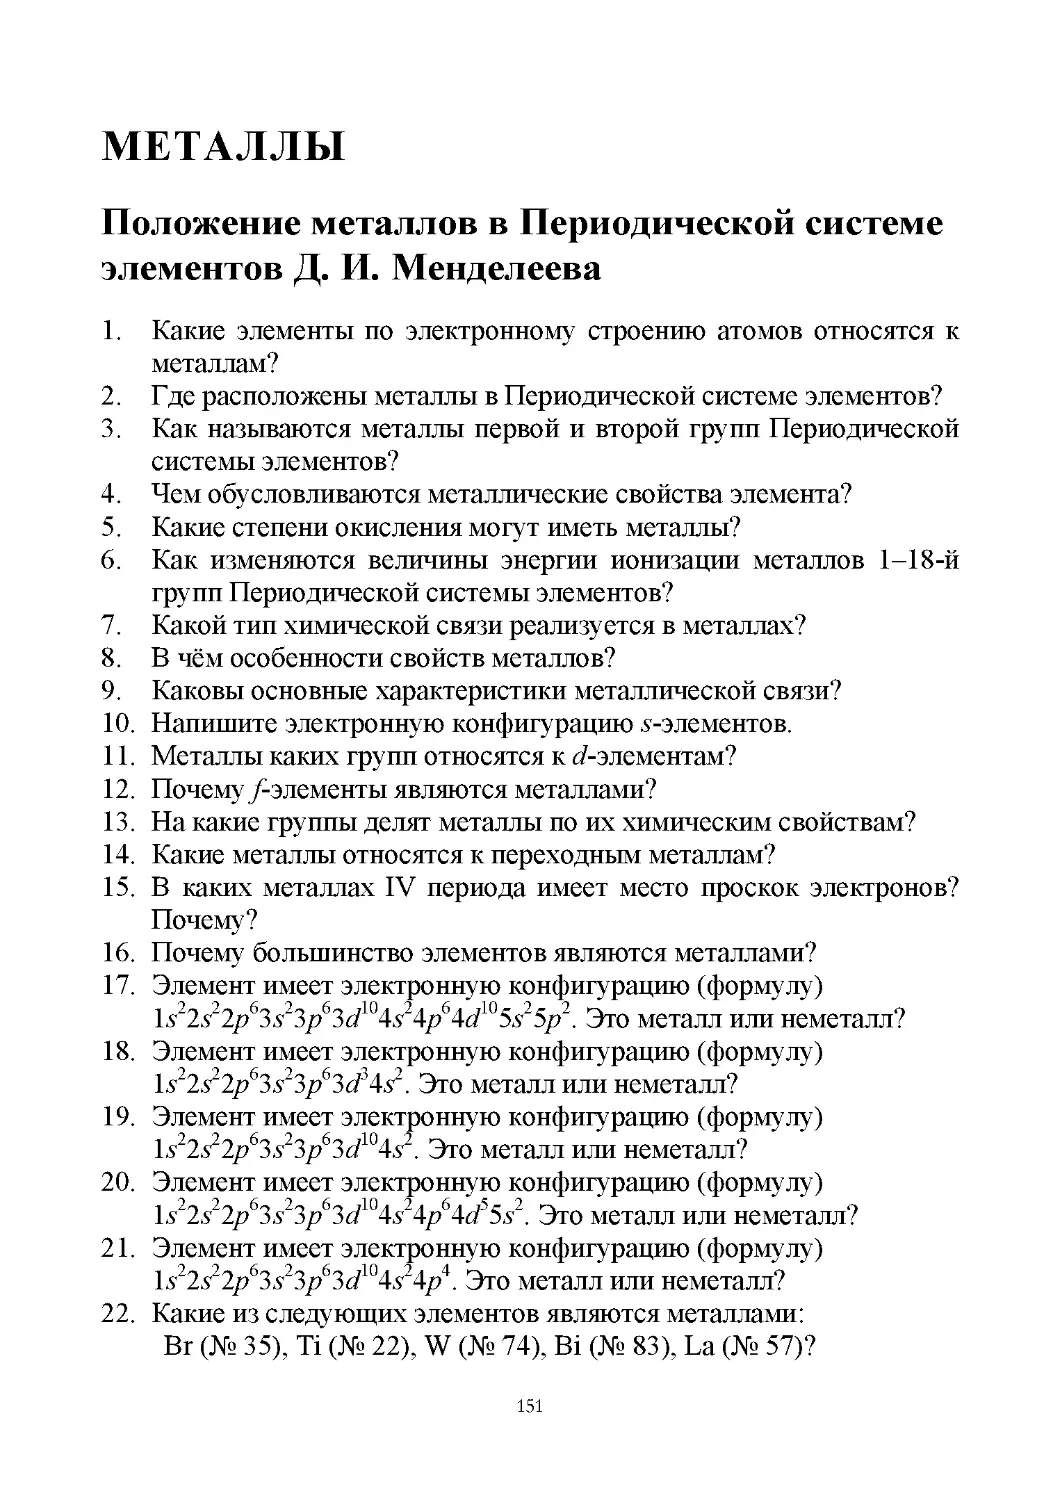 Металлы
Положение металлов в периодической системе элементов Д. И. Менделеева